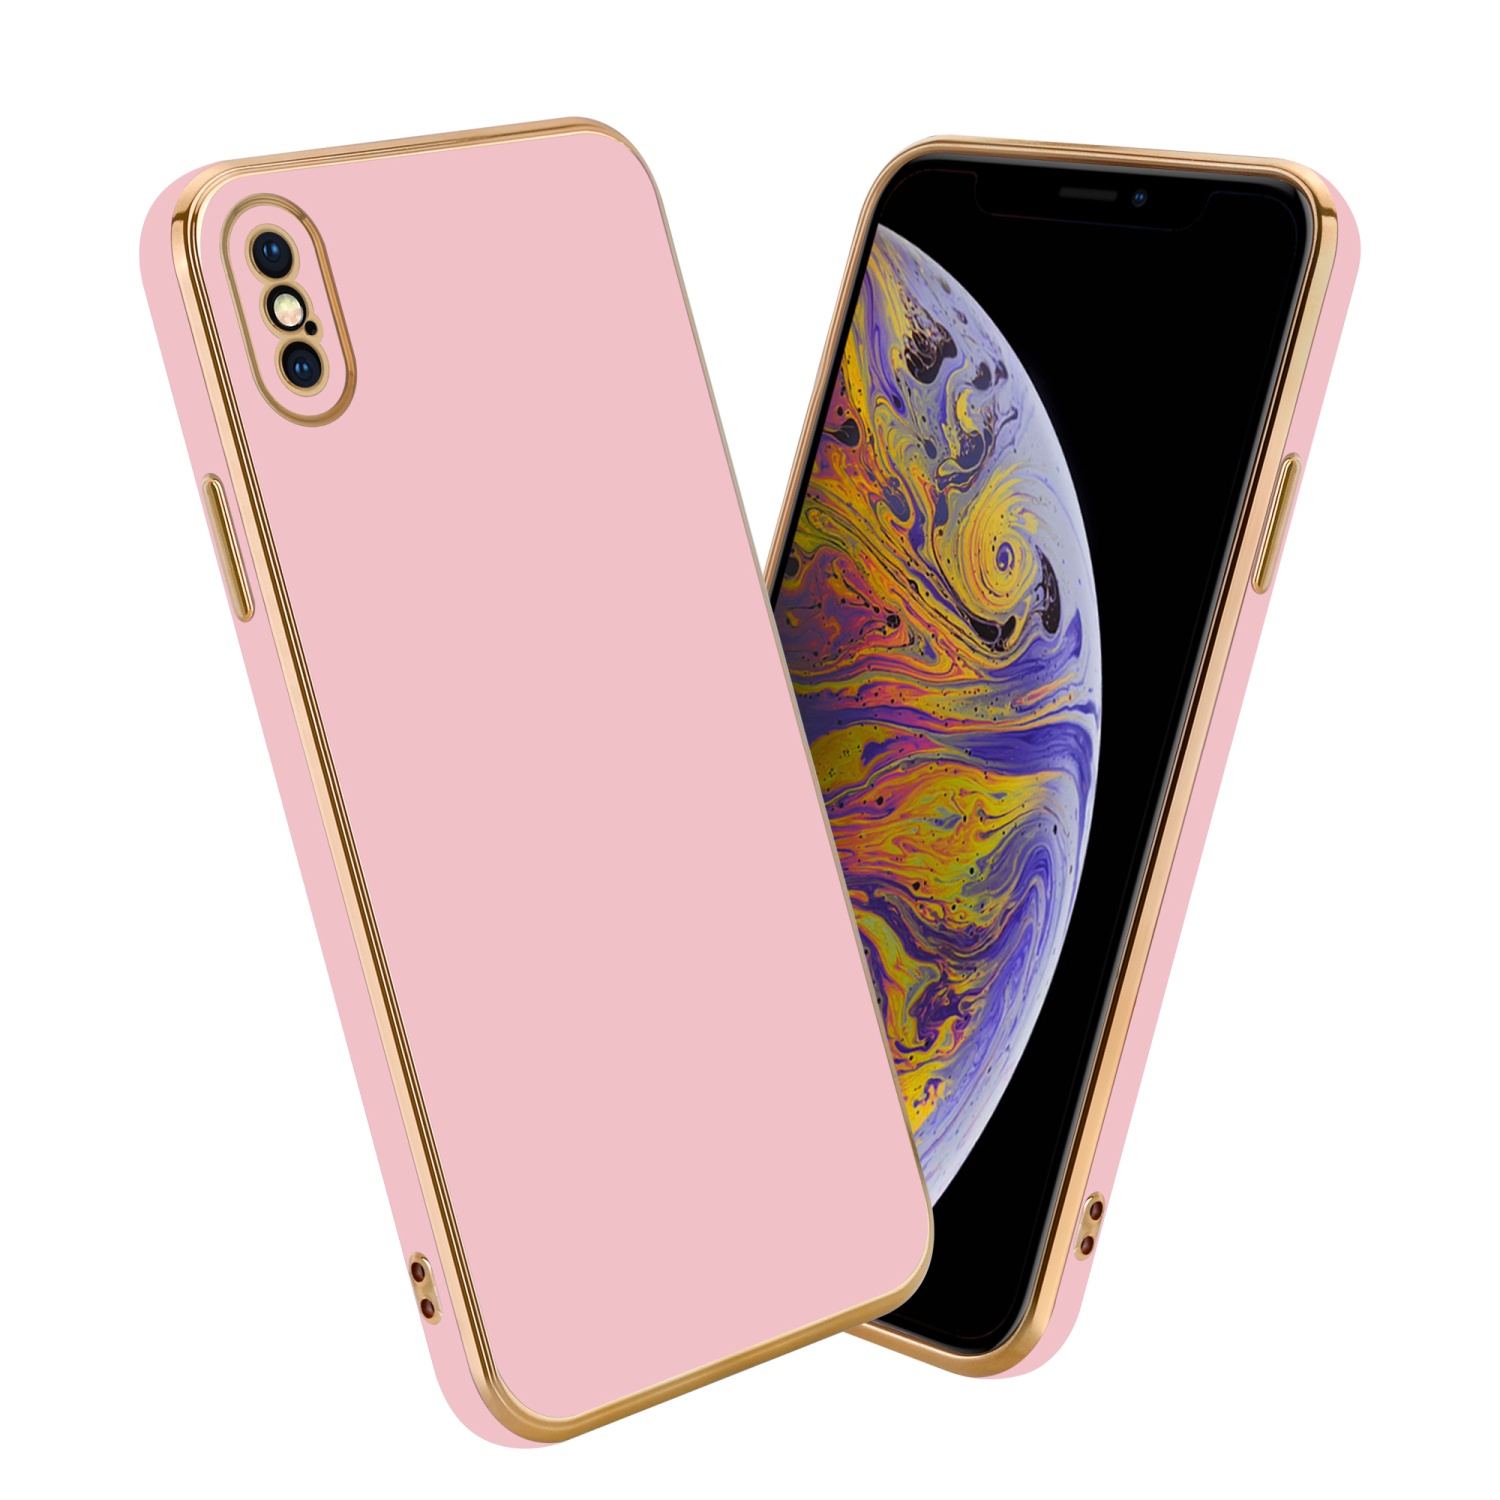 Coque pour Apple iPhone X / XS en Glossy Rose - Or Housse de protection Étui en silicone TPU flexible et avec protection pour appareil photo